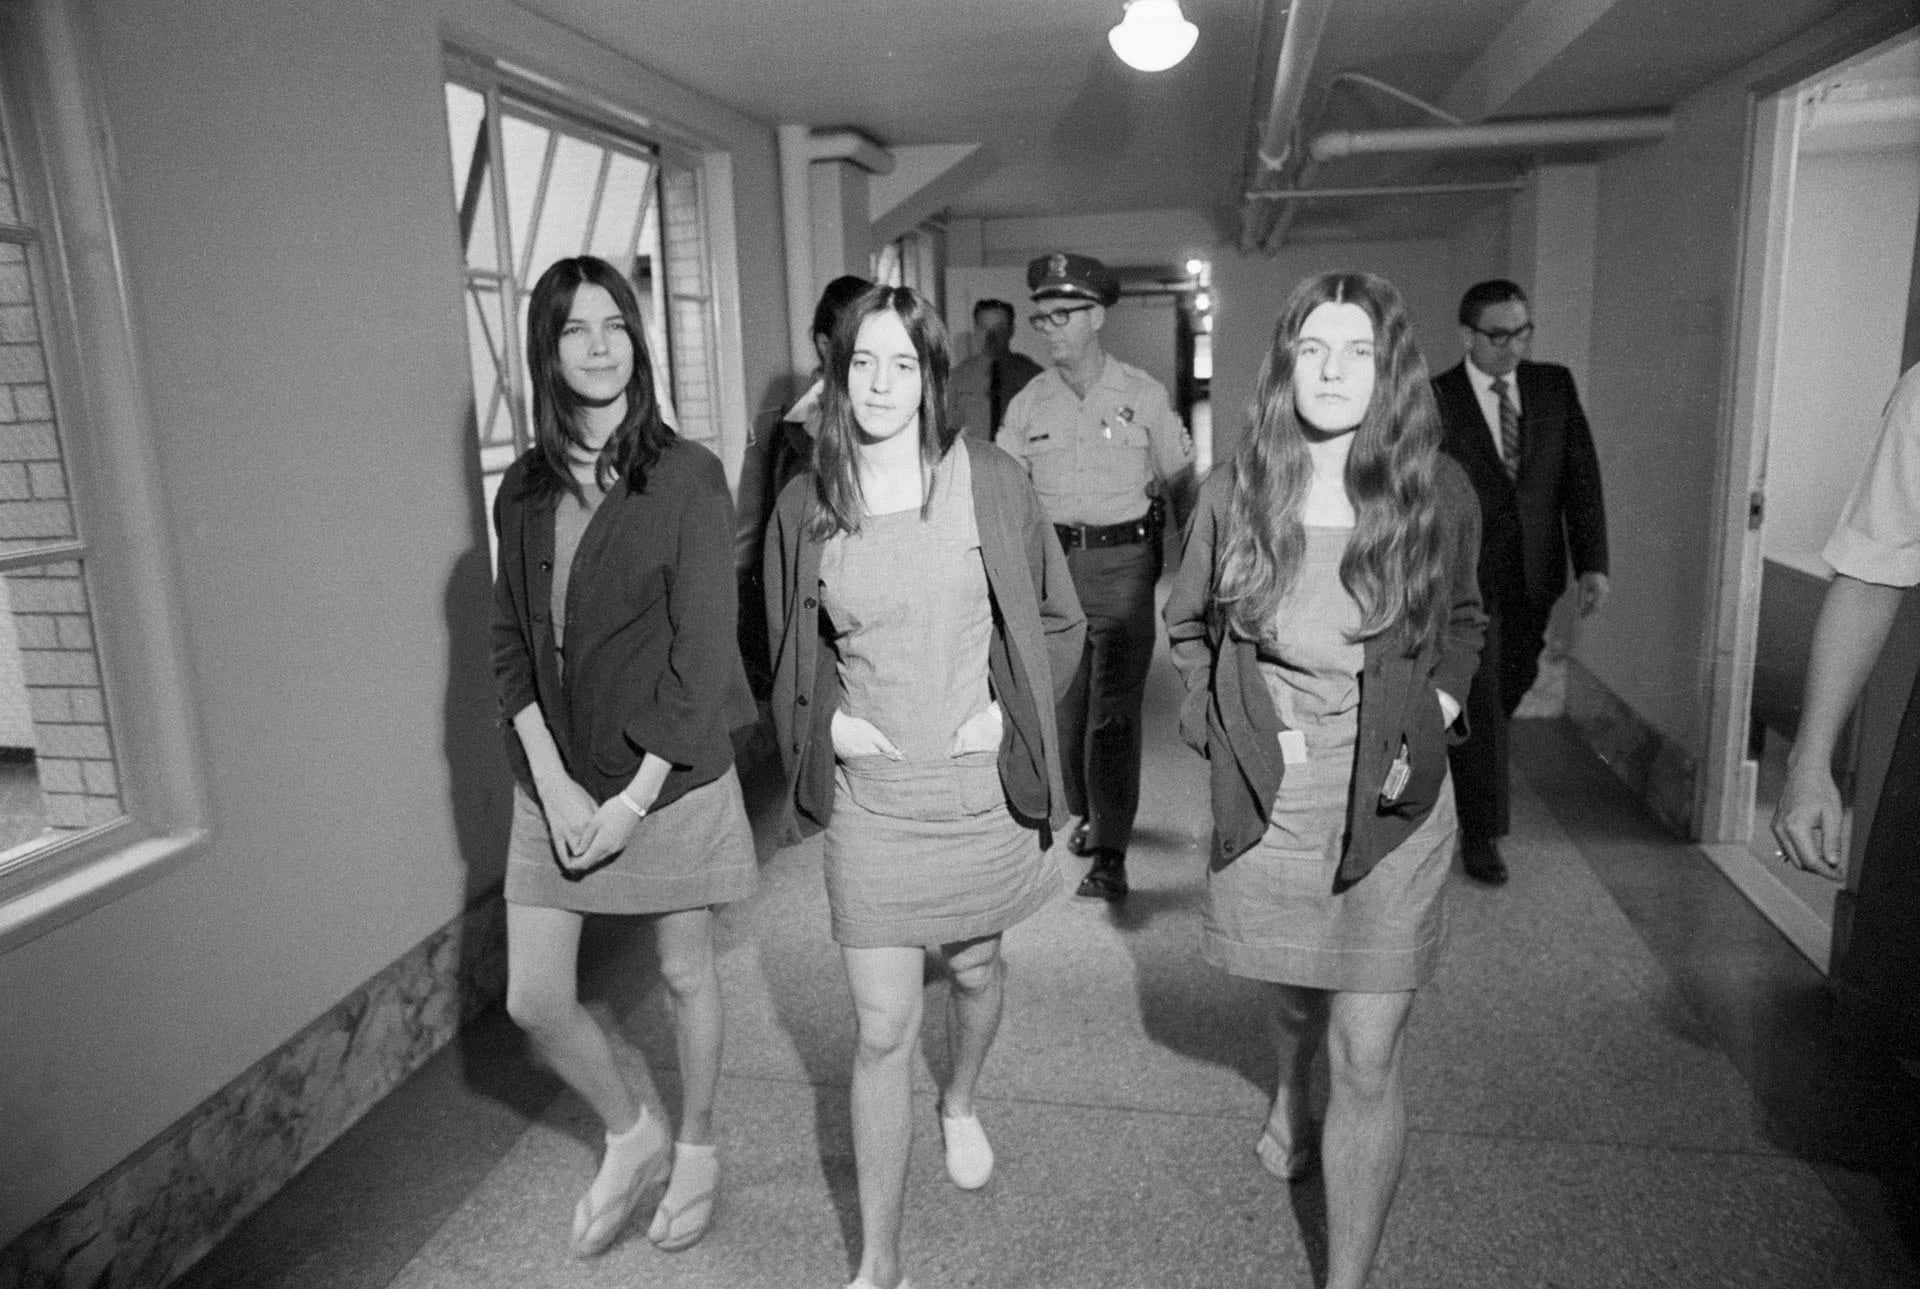 Leslie Van Houten, Susan Atkins, y Patricia Krenwinkel en 1970